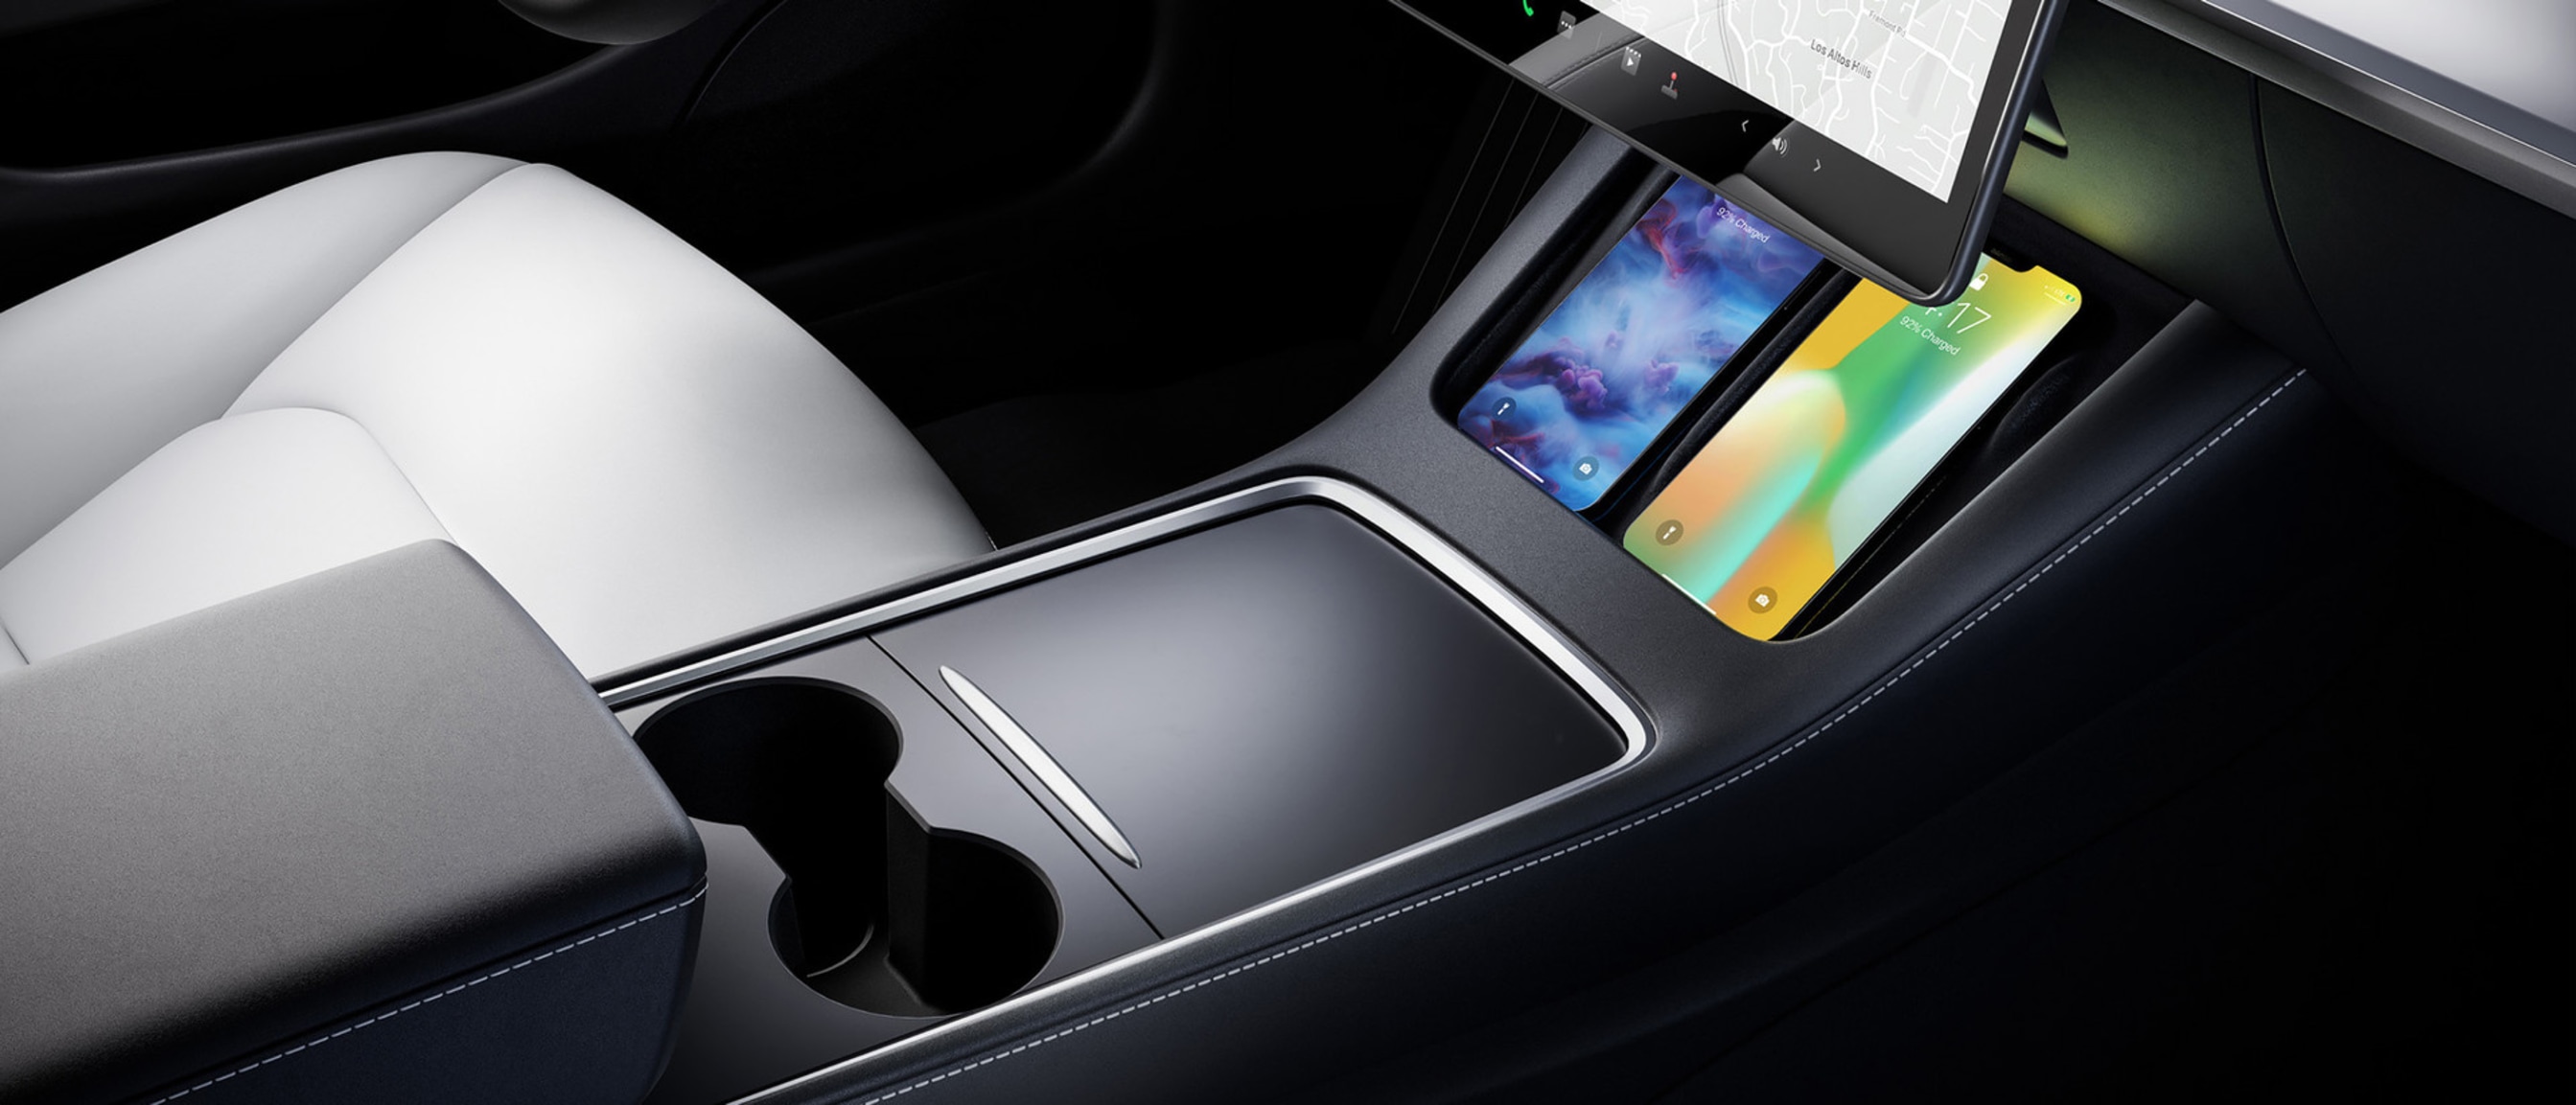 Interiorul unui vehicul Model 3 cu suport pentru pahare, ecran tactil de 15", telefoane mobile